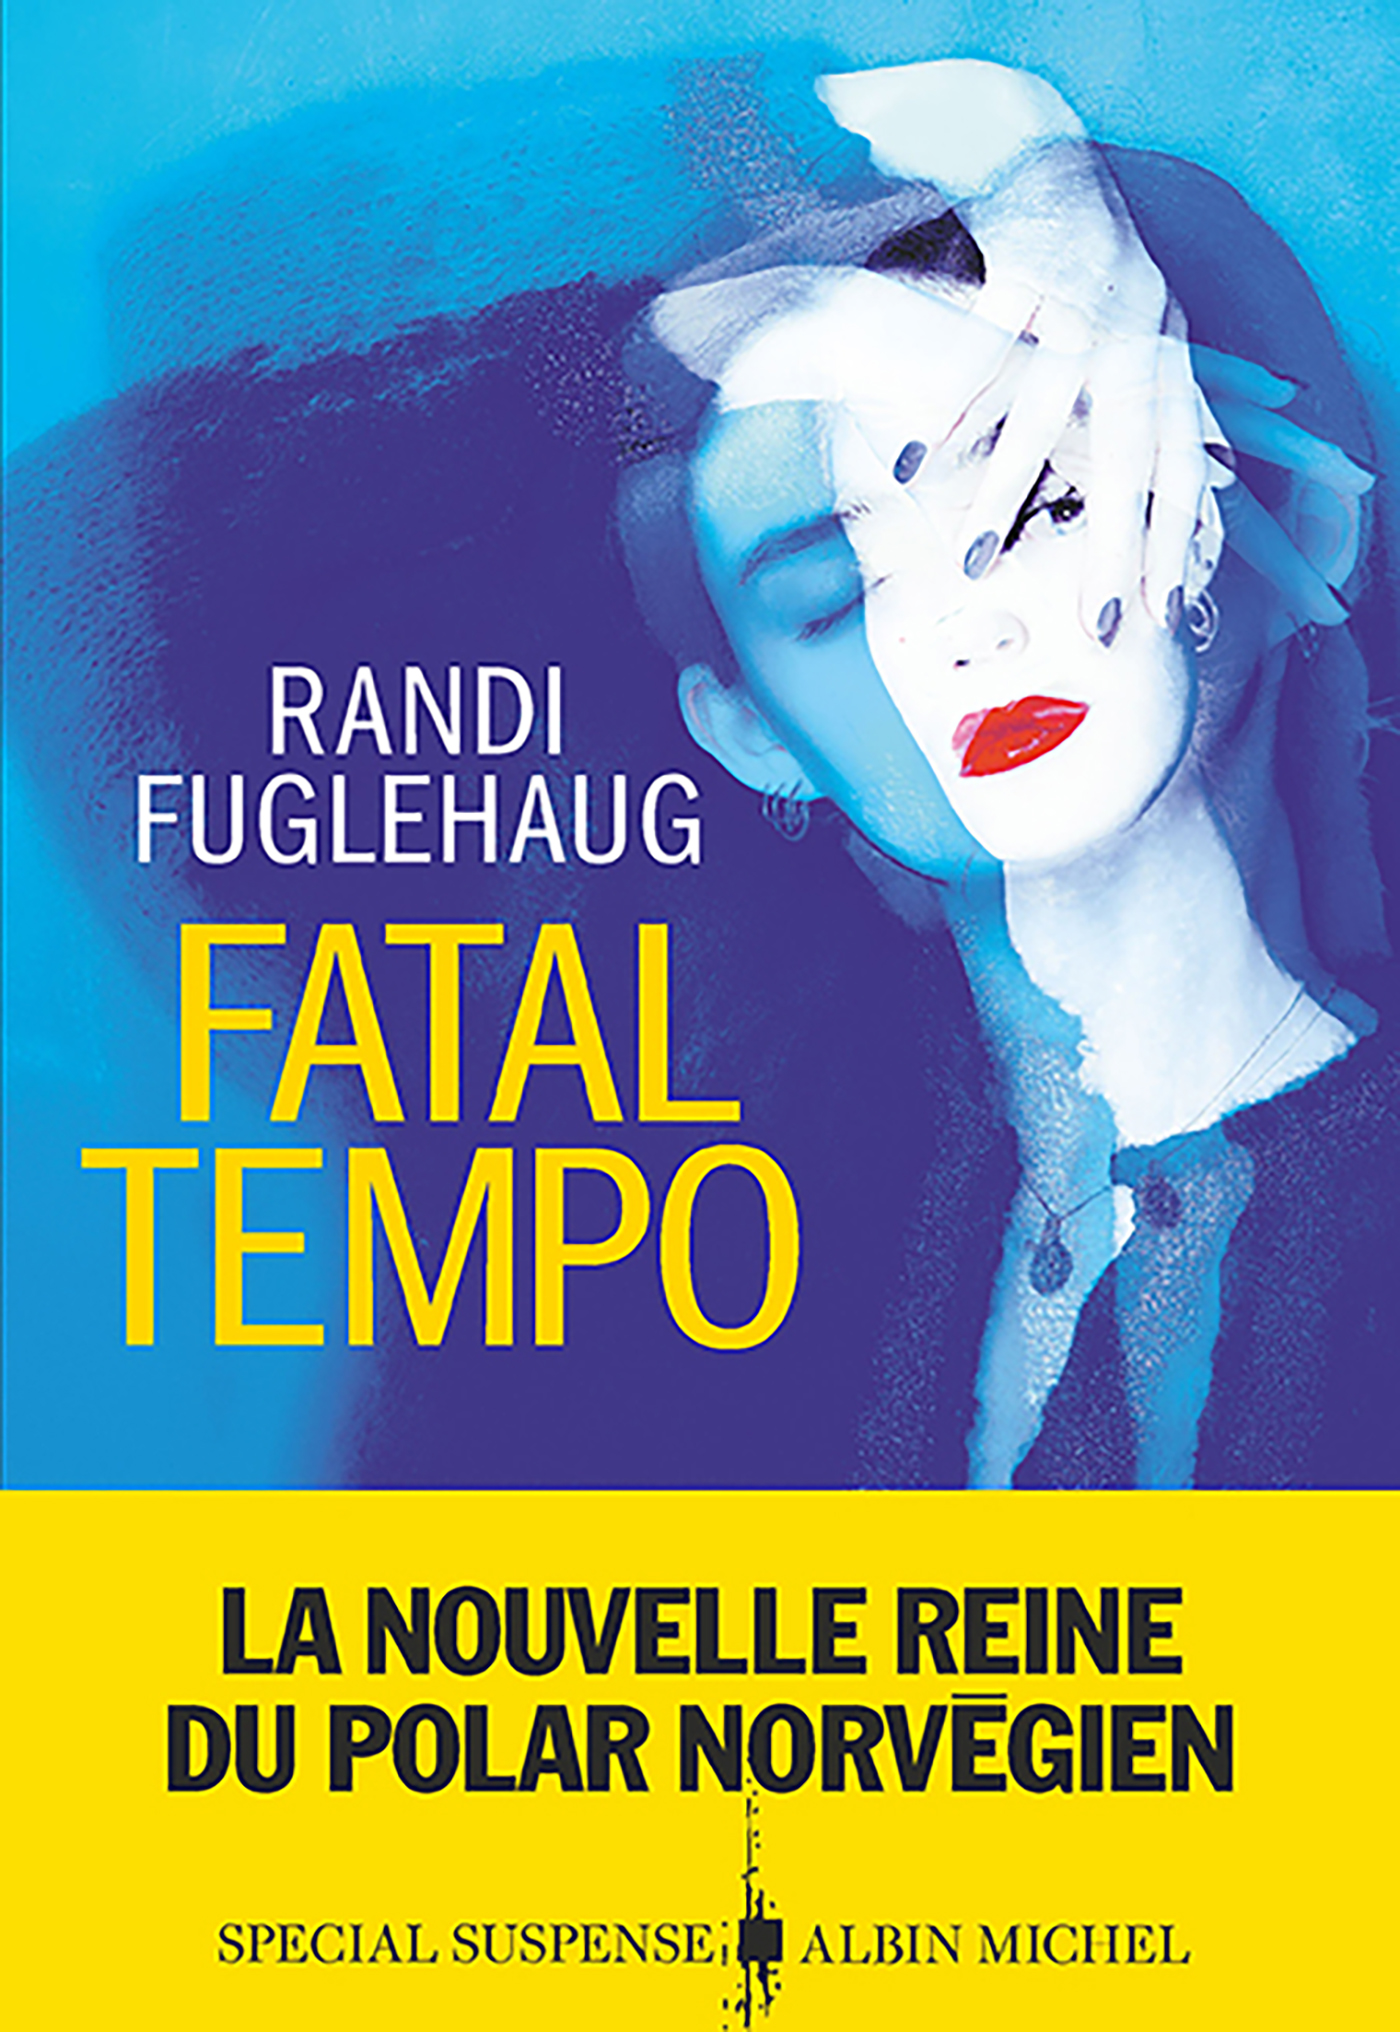 Couverture du livre Fatal Tempo